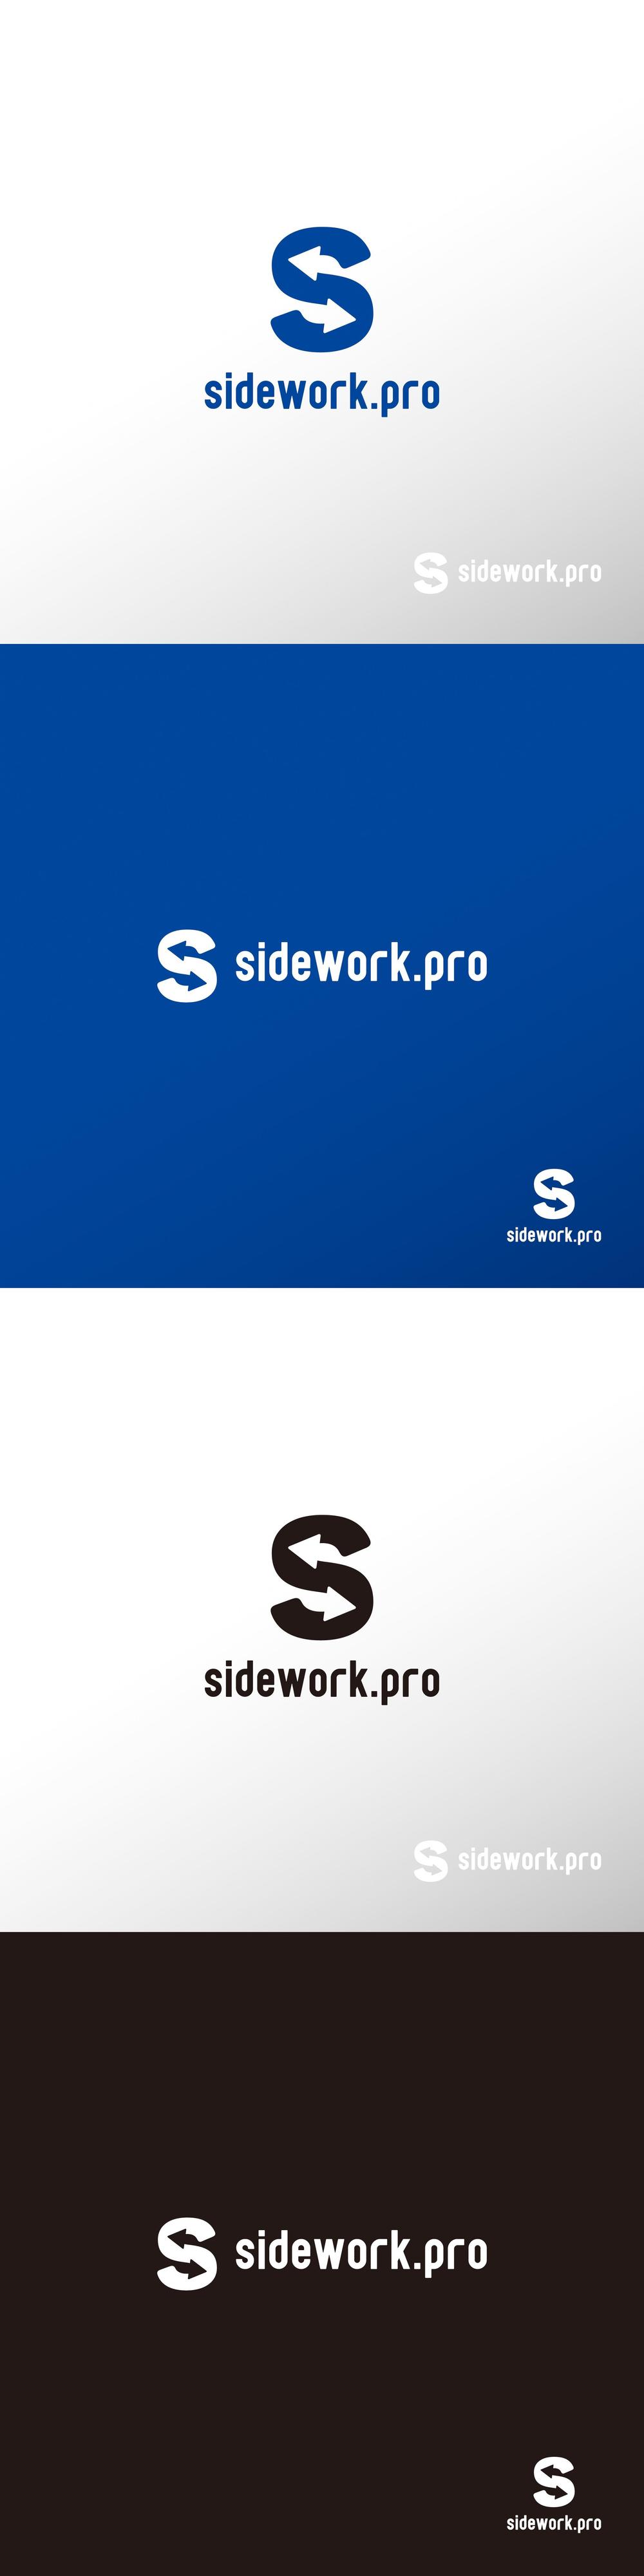 サイト_sidework.pro_ロゴA1.jpg